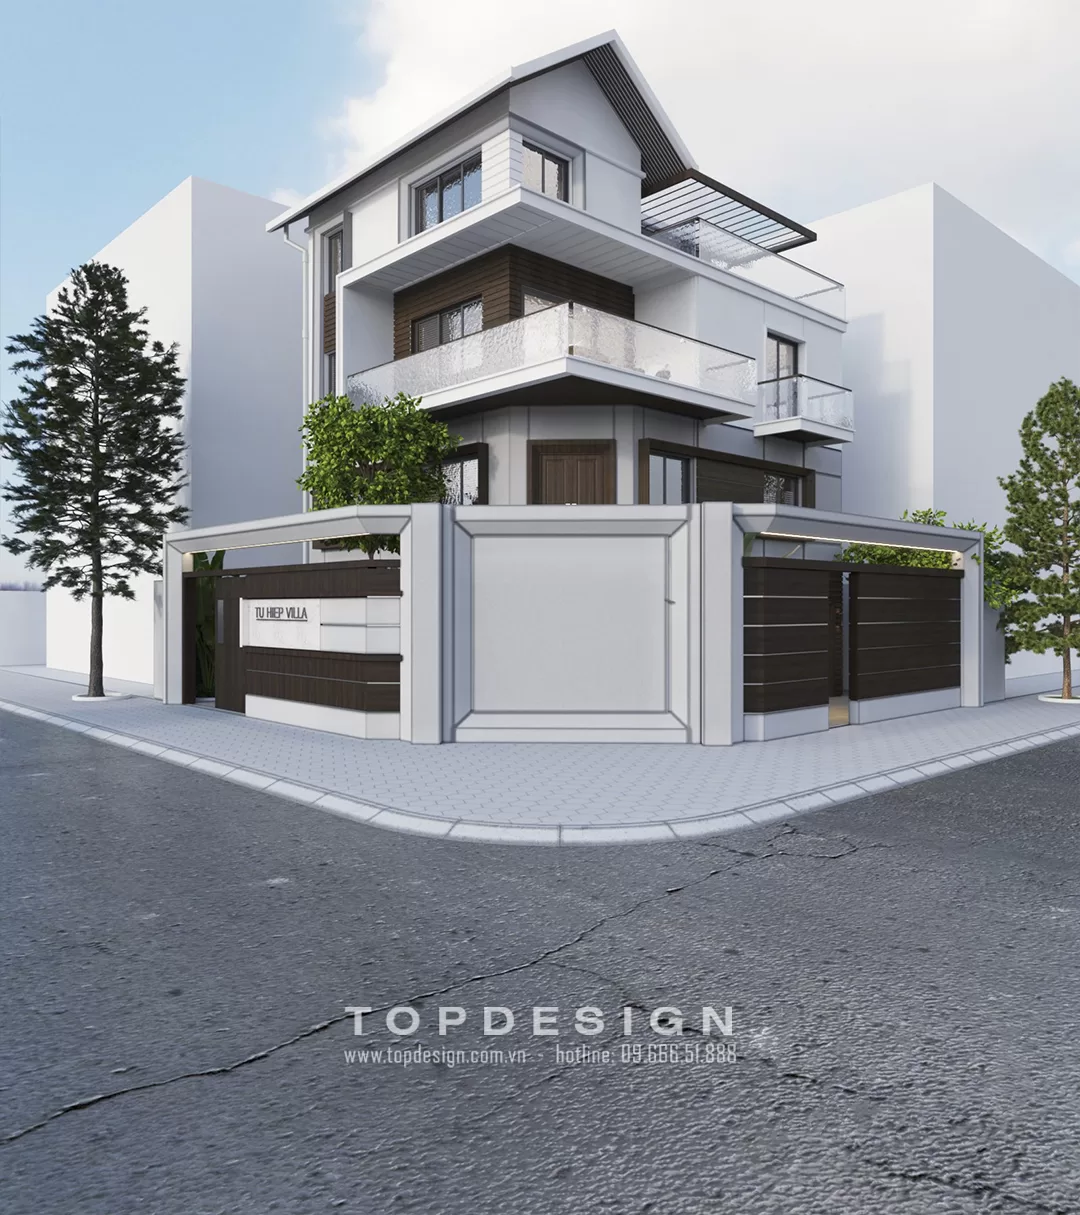 Báo giá hoàn thiện nhà xây thô - TOPDESIGN - 1